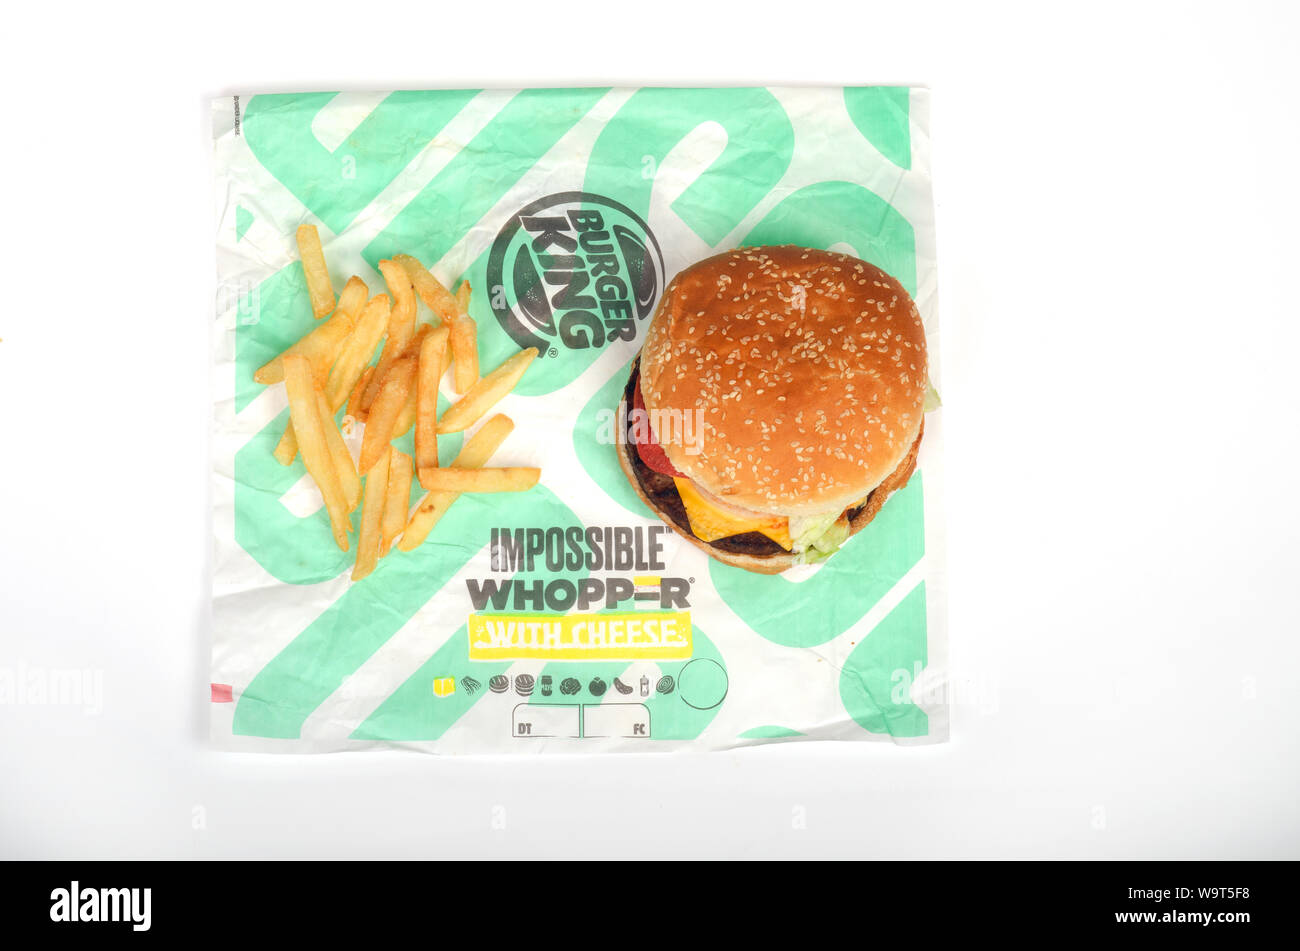 Burger King Whopper impossibile con formaggio e patatine fritte sul wrapper, un vegetariano, senza carne, impianto basato a sandwich Foto Stock